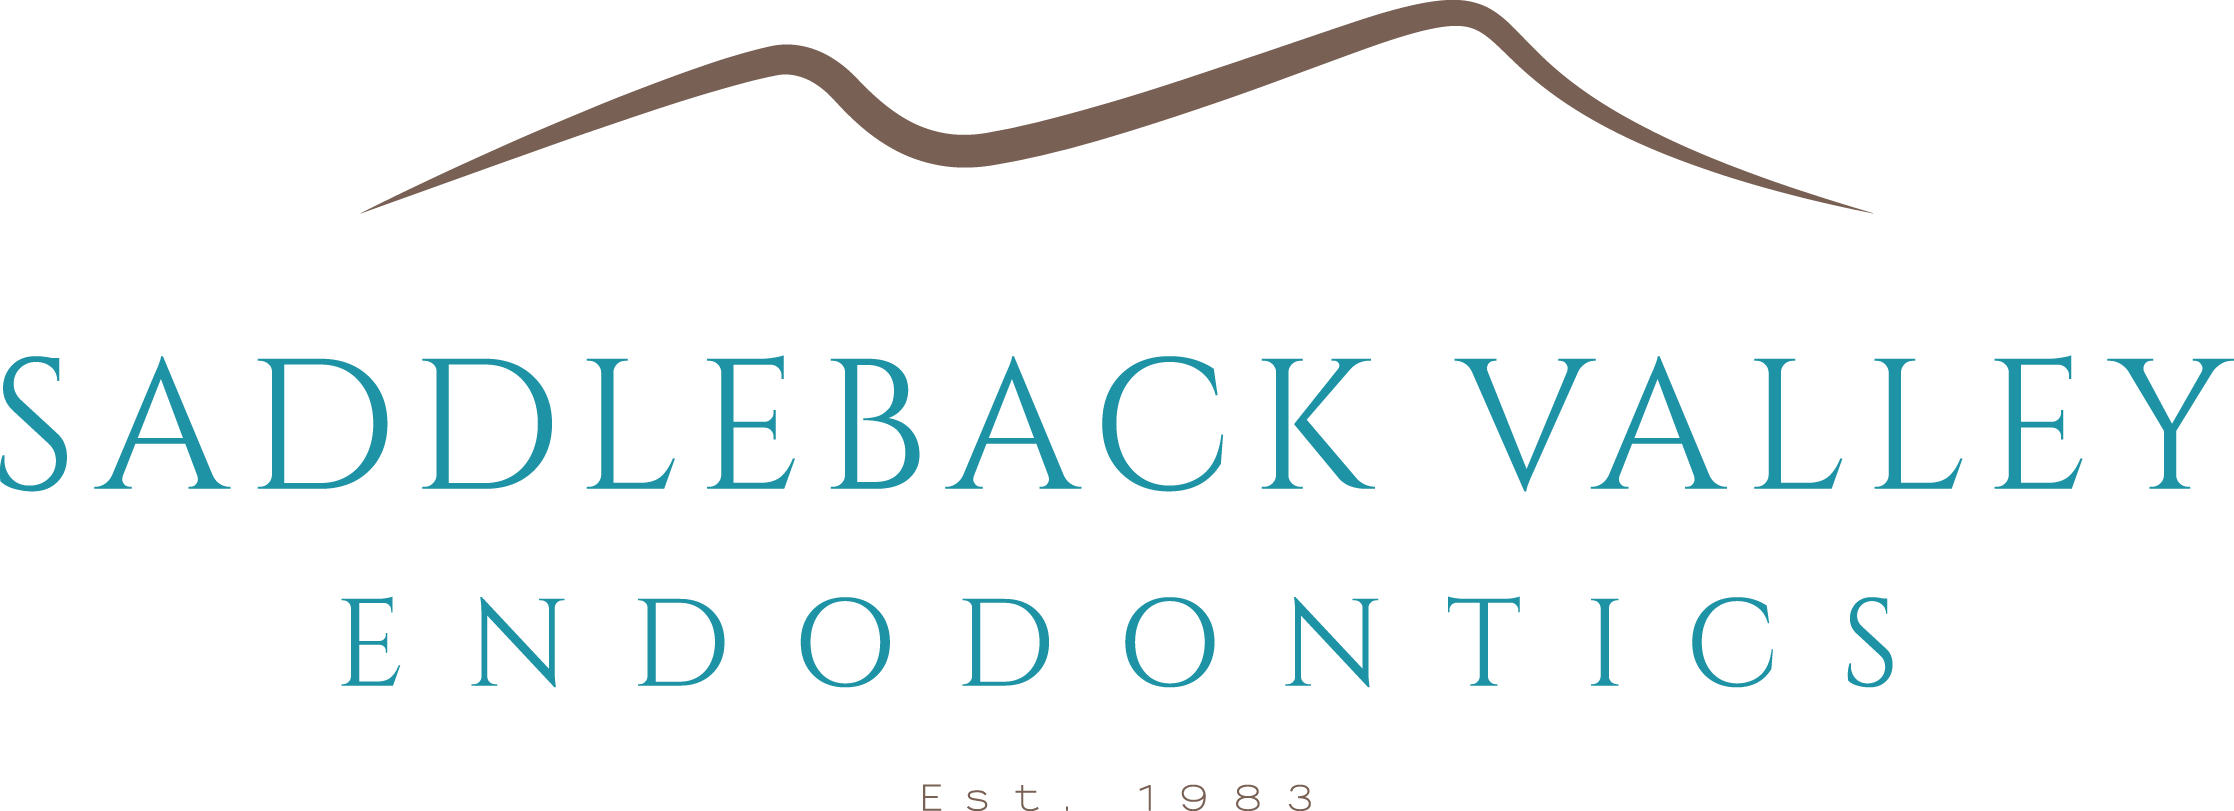 Saddleback Valley Endodontics